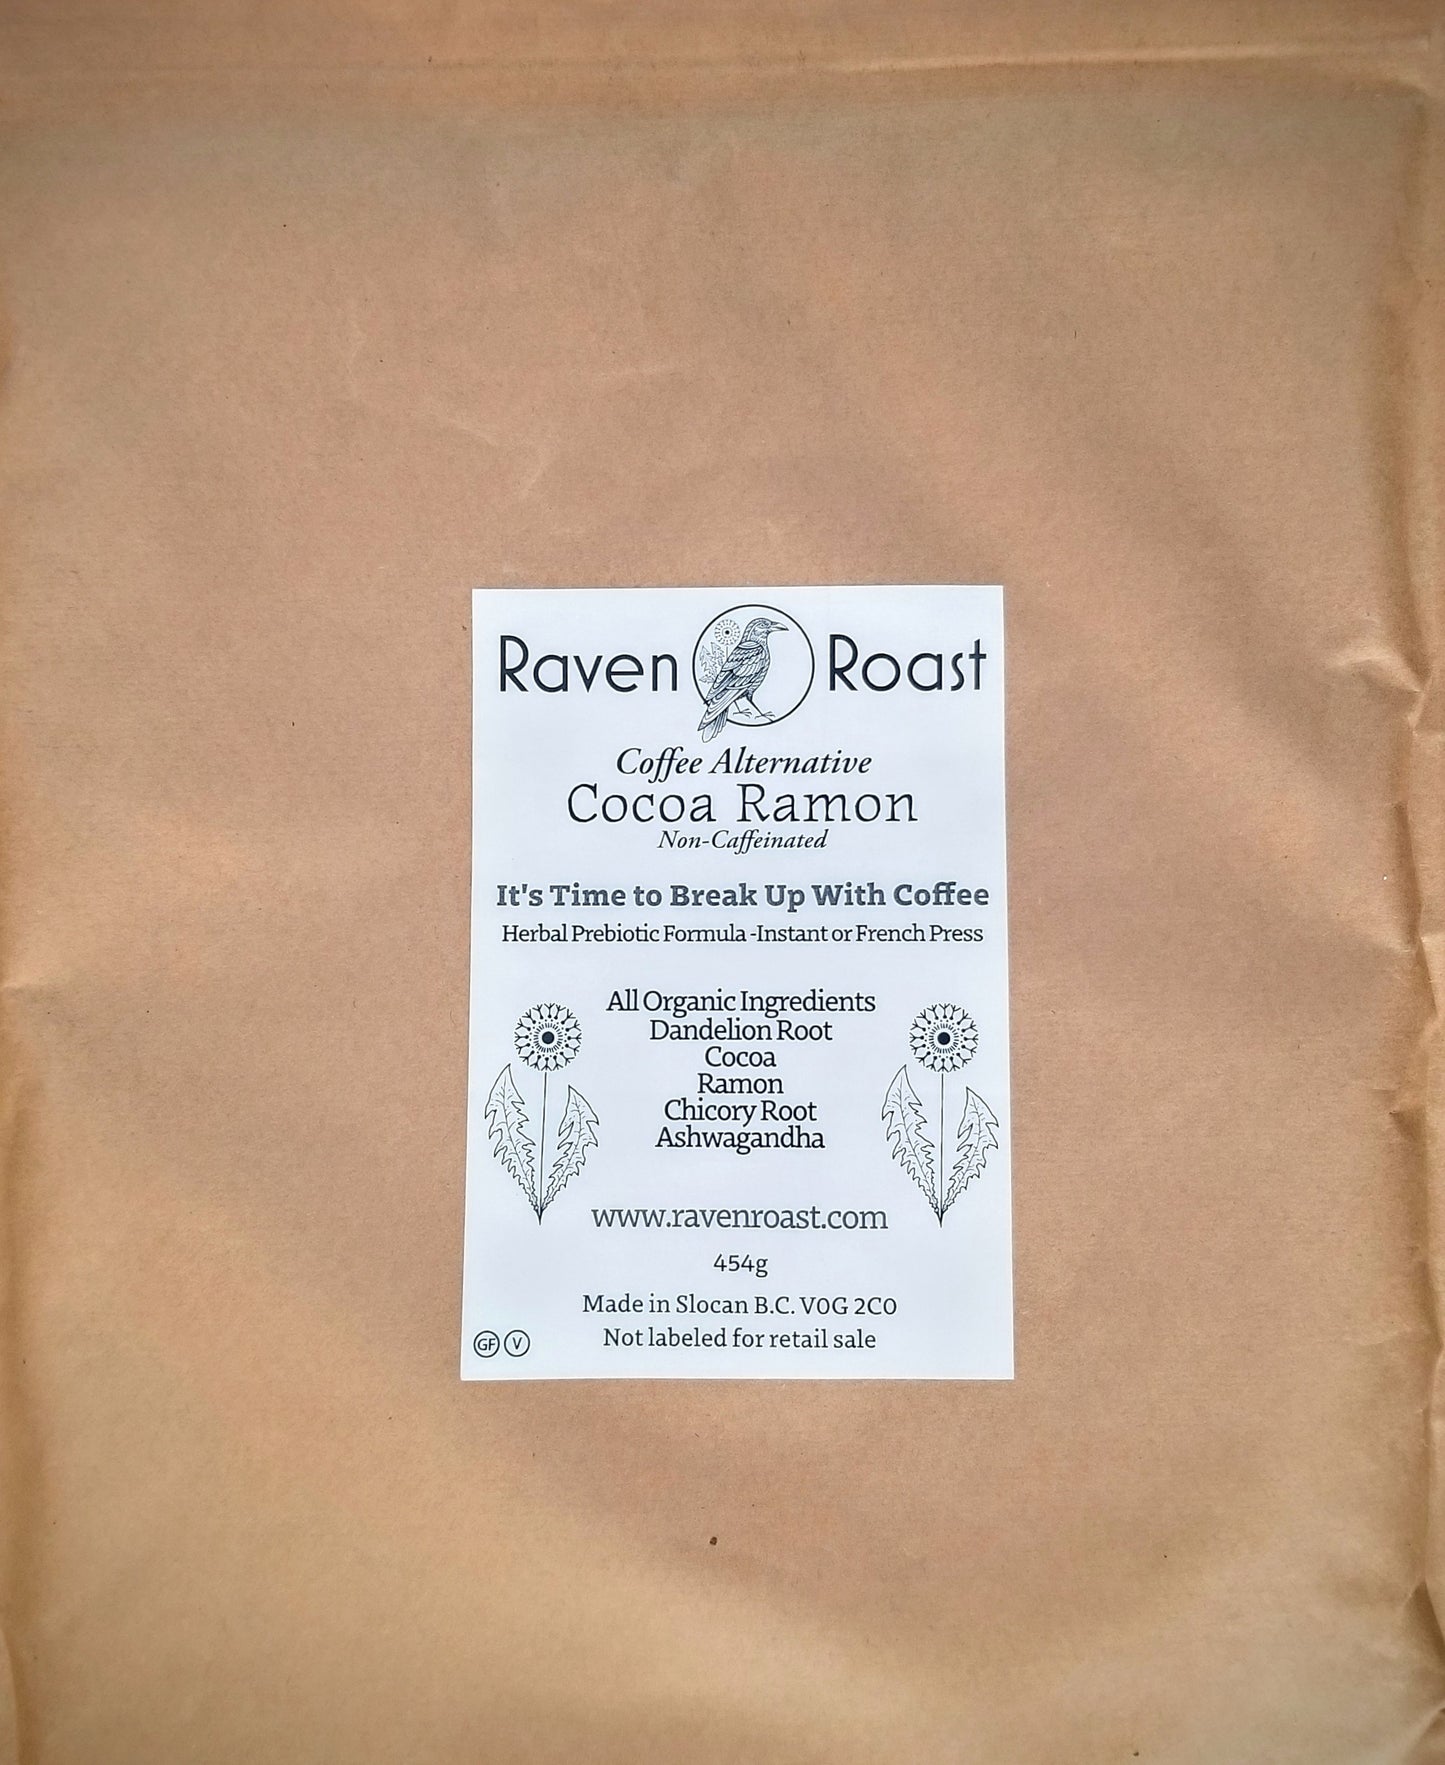 Cocoa Ramon, Non-Caffeinated Coffee-Alternative